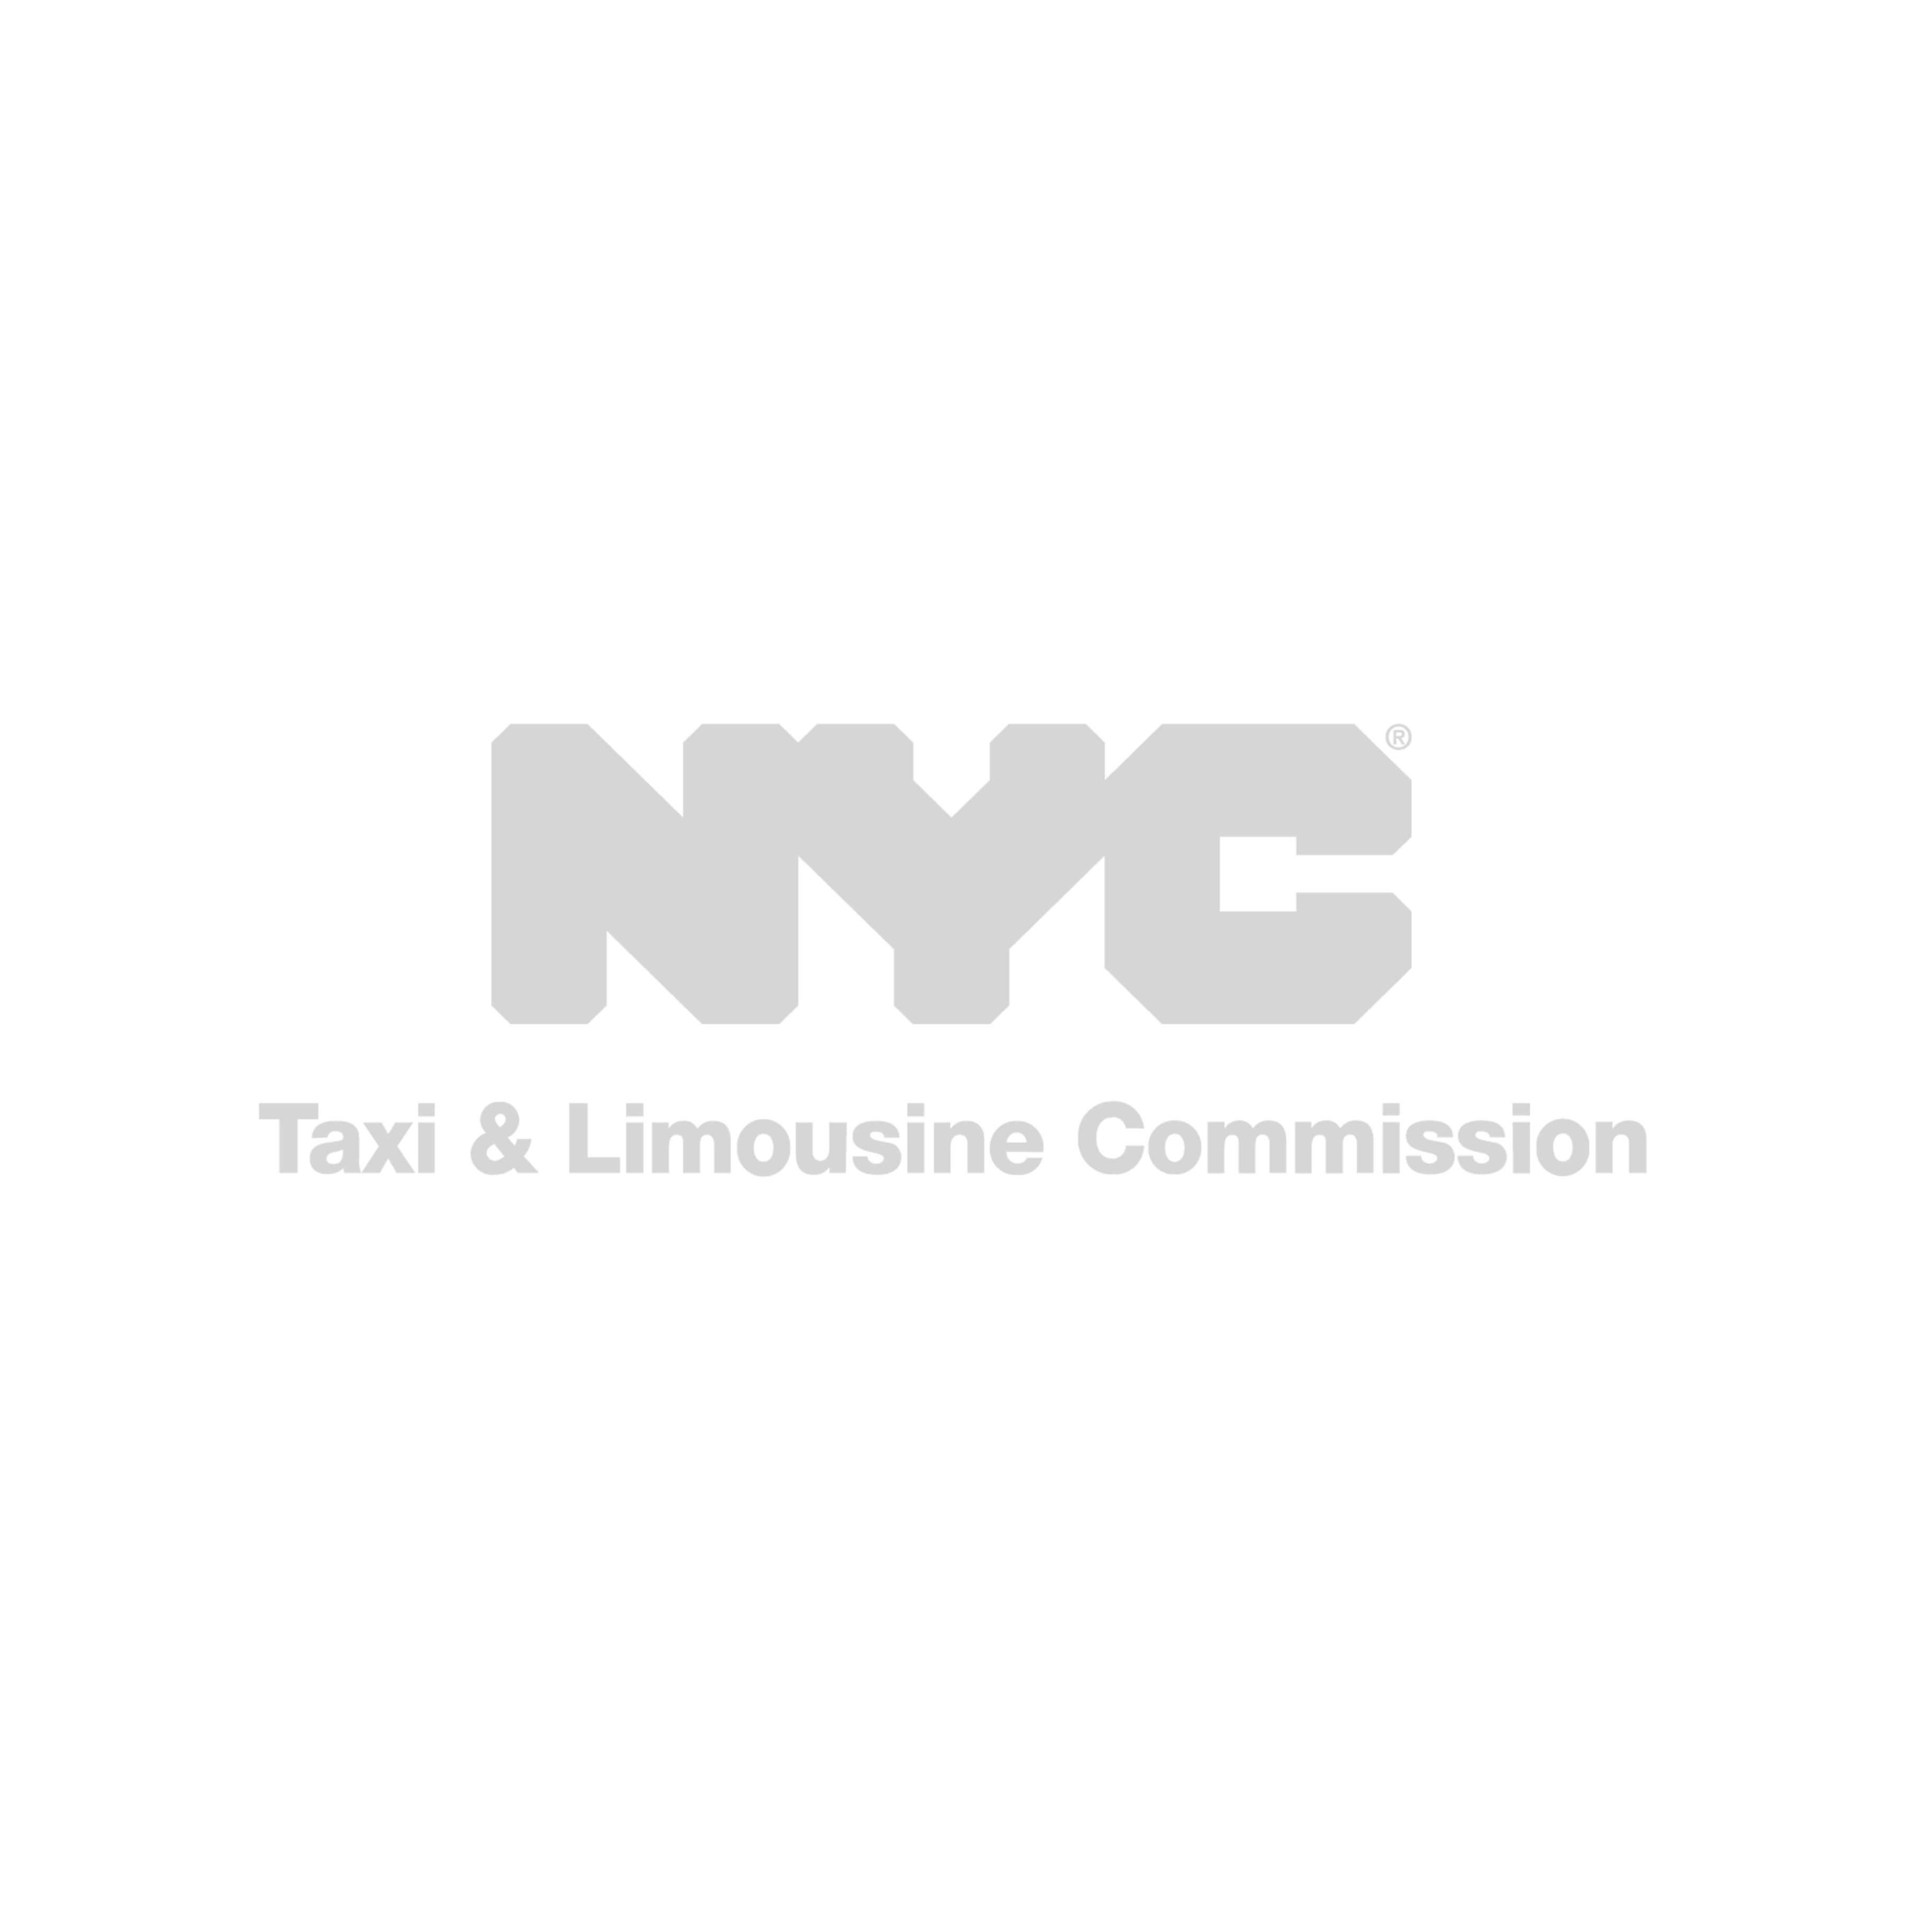 nyc-tlc-logo-GREY